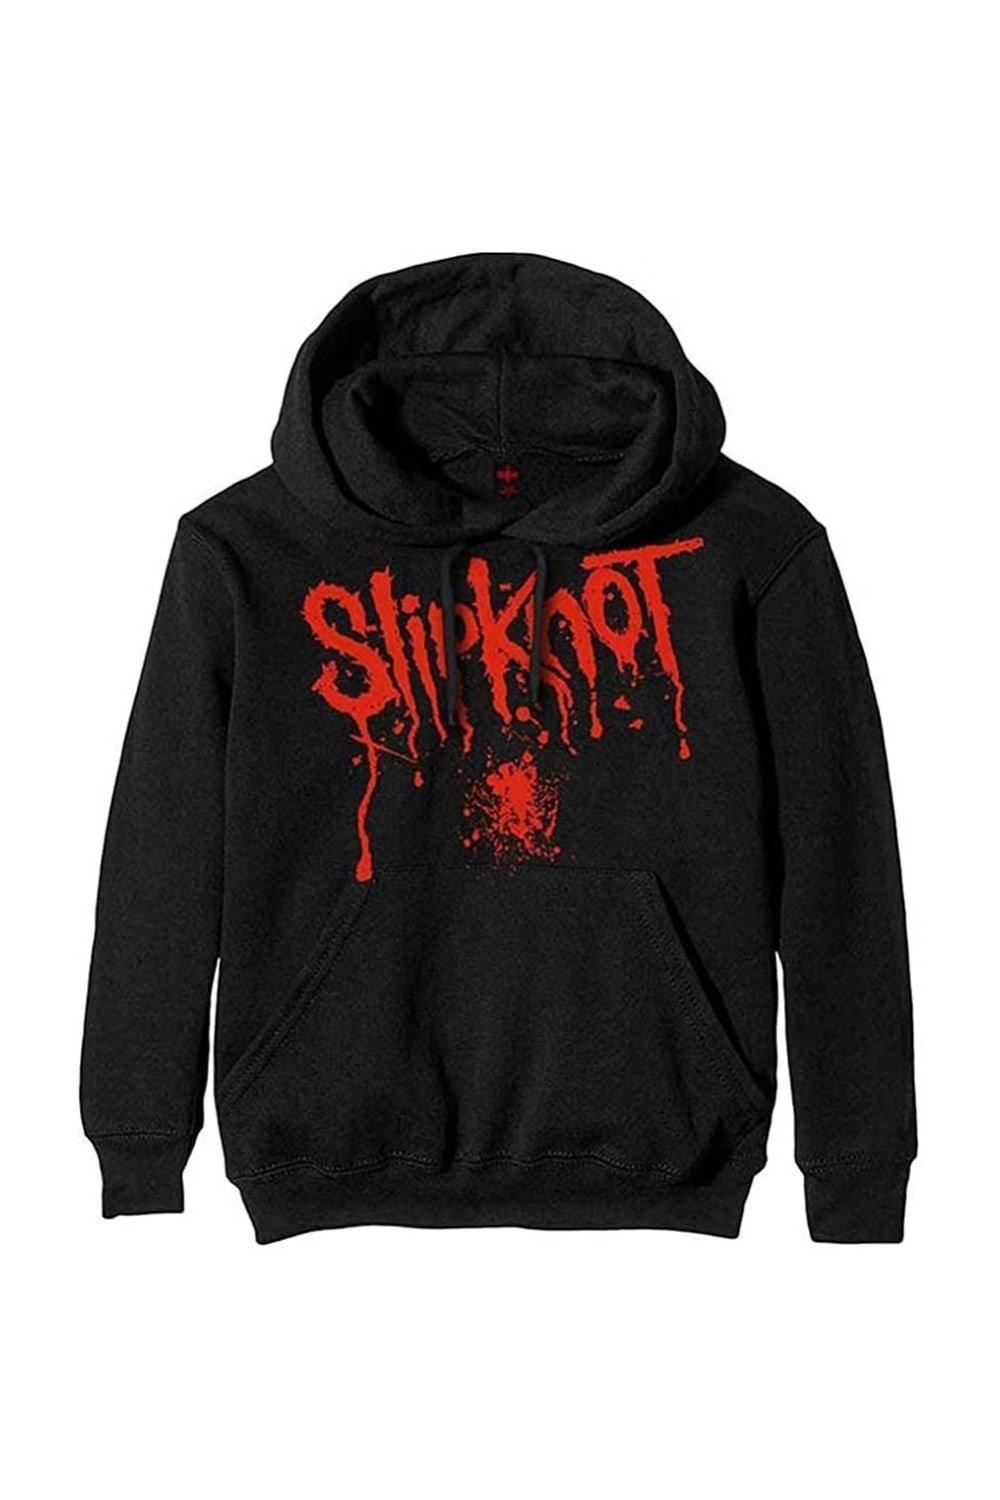 Пуловер с капюшоном и брызгами крови Slipknot, черный slipknot slipknot iowa limited colour 2 lp